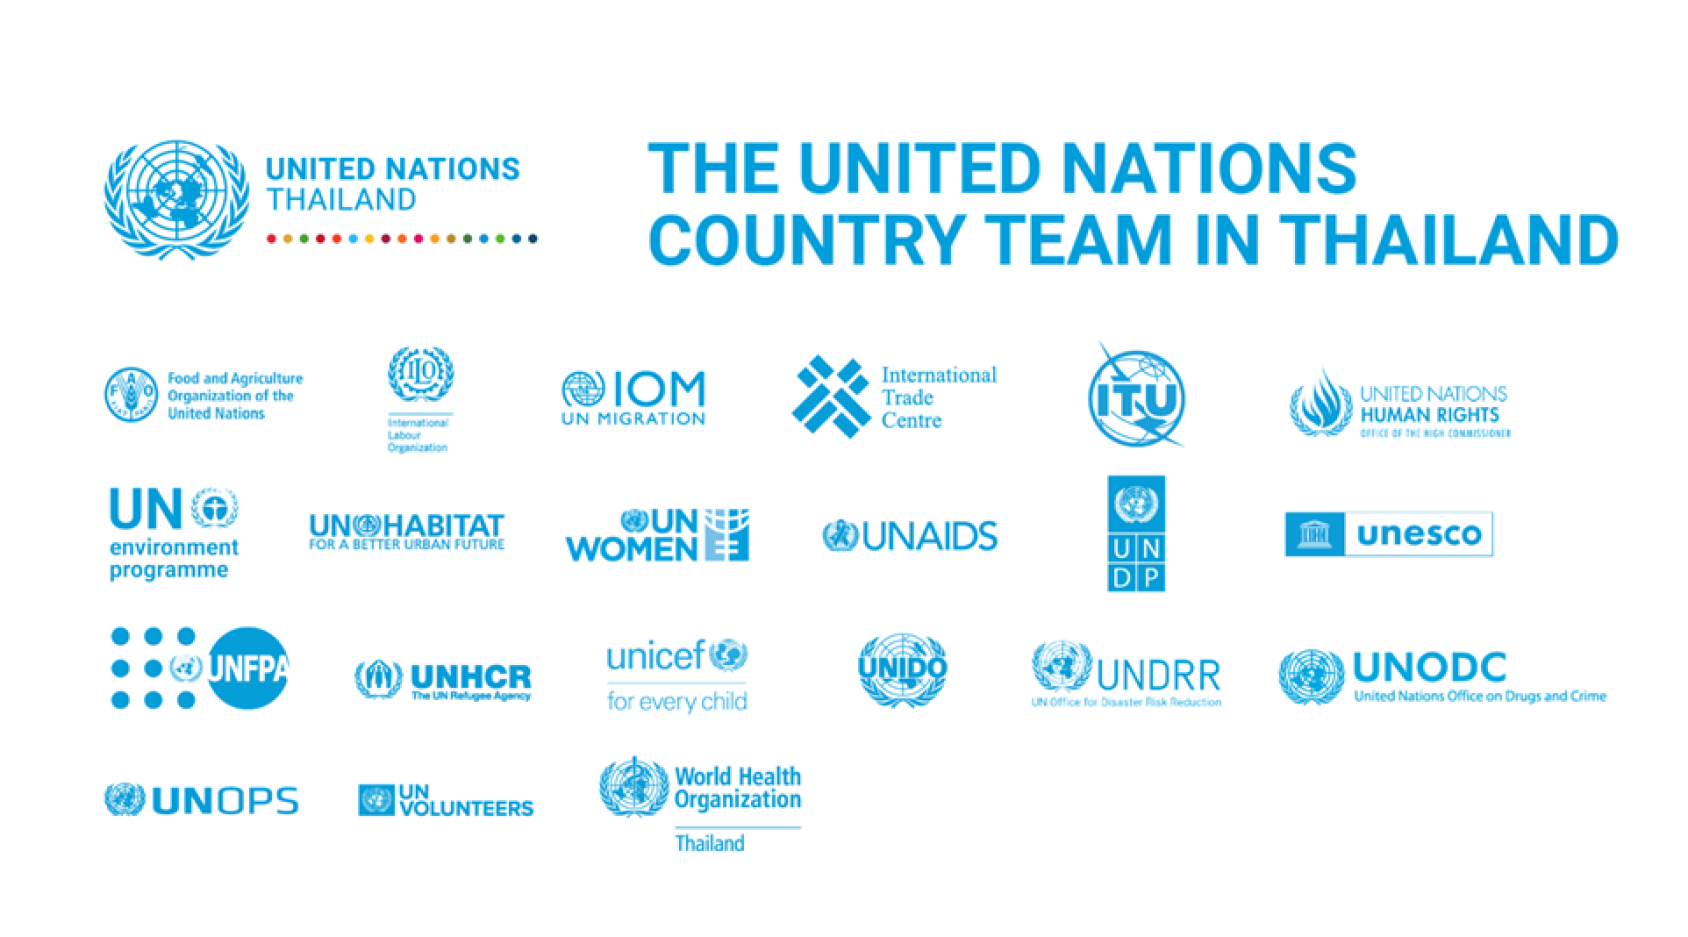 The logos of all UN agencies in Thailand